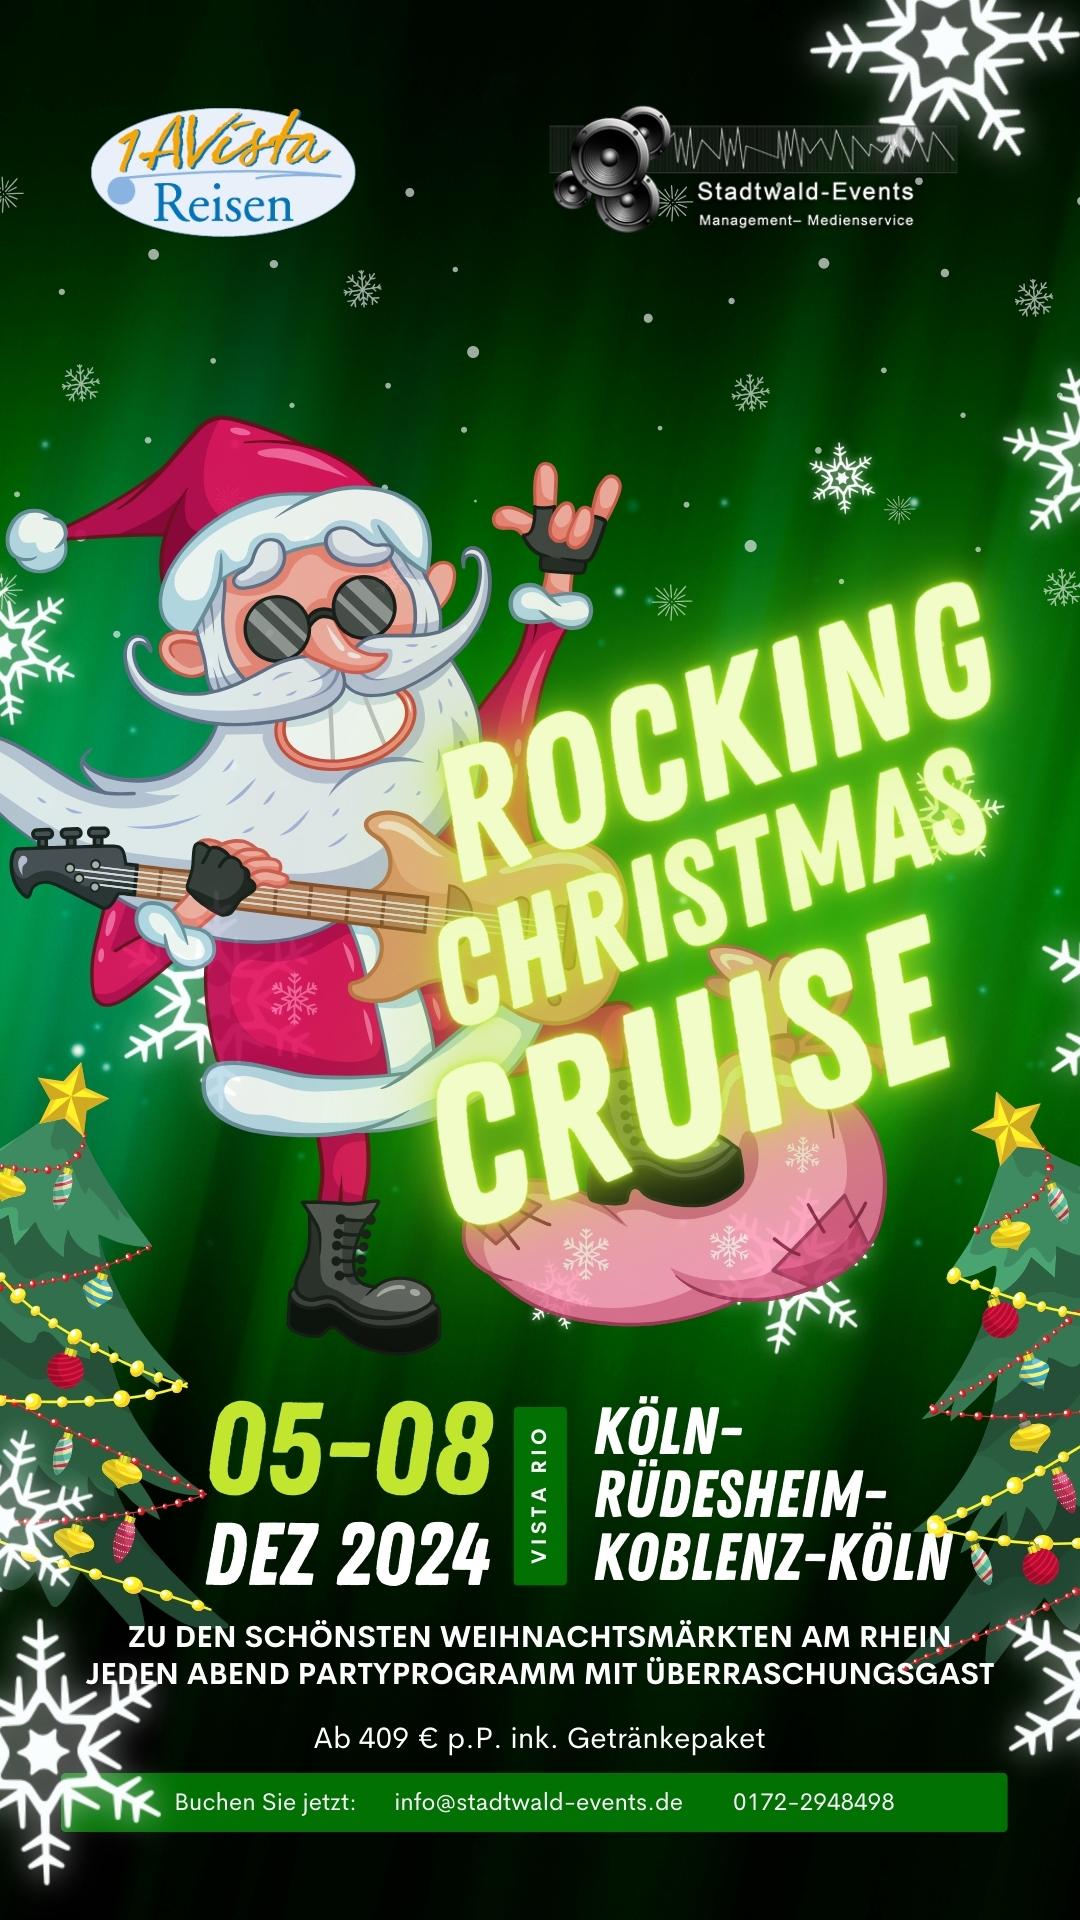 Rocking Christmas Cruise Veranstaltung Stadtwald-Events auf der Vista Rio